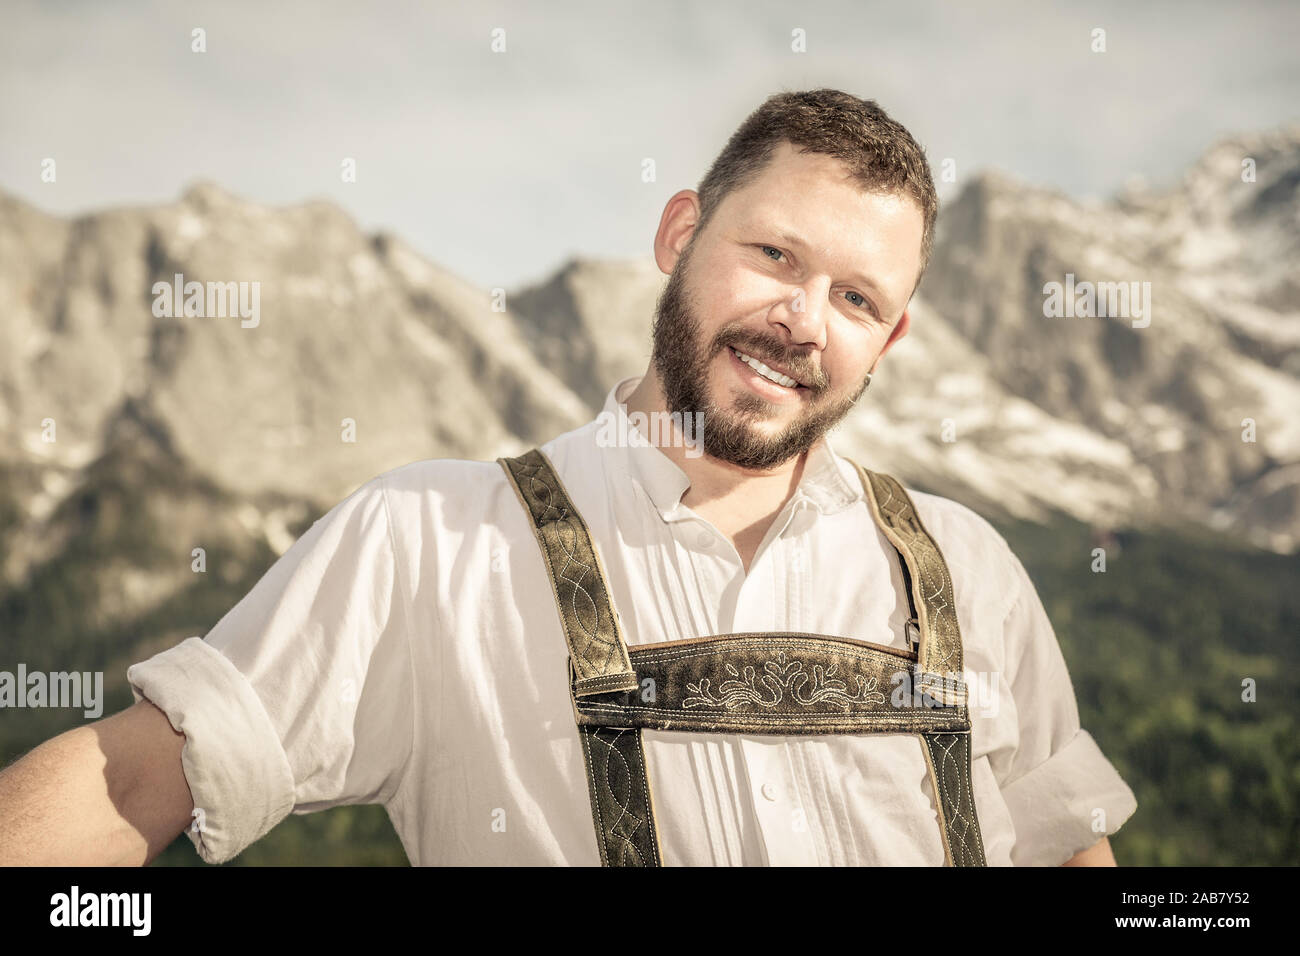 Ein junger Mann in Tracht vor einer Bergkulisse Foto Stock